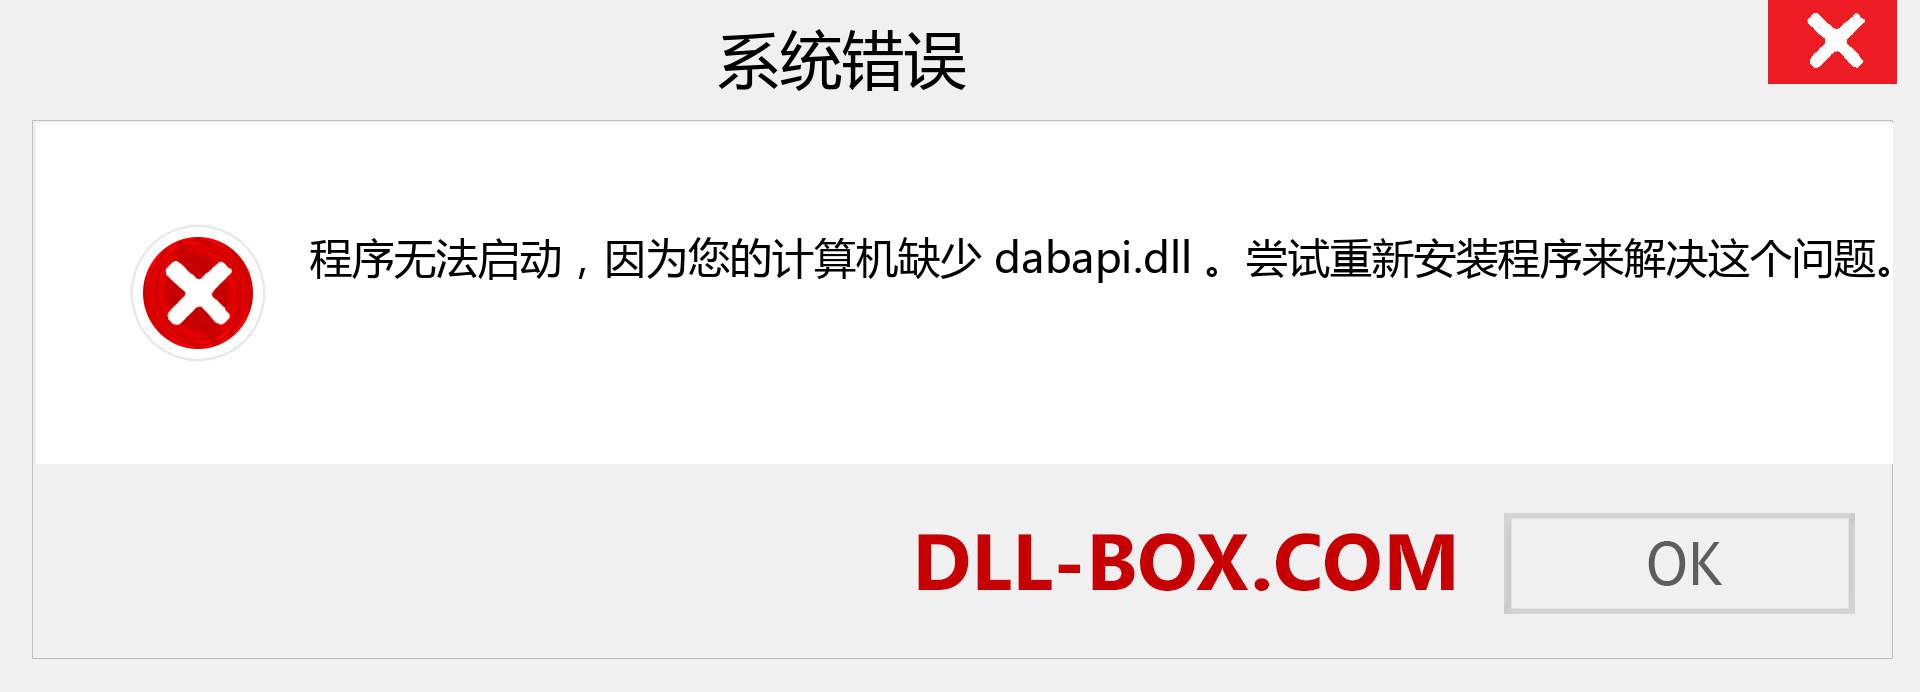 dabapi.dll 文件丢失？。 适用于 Windows 7、8、10 的下载 - 修复 Windows、照片、图像上的 dabapi dll 丢失错误